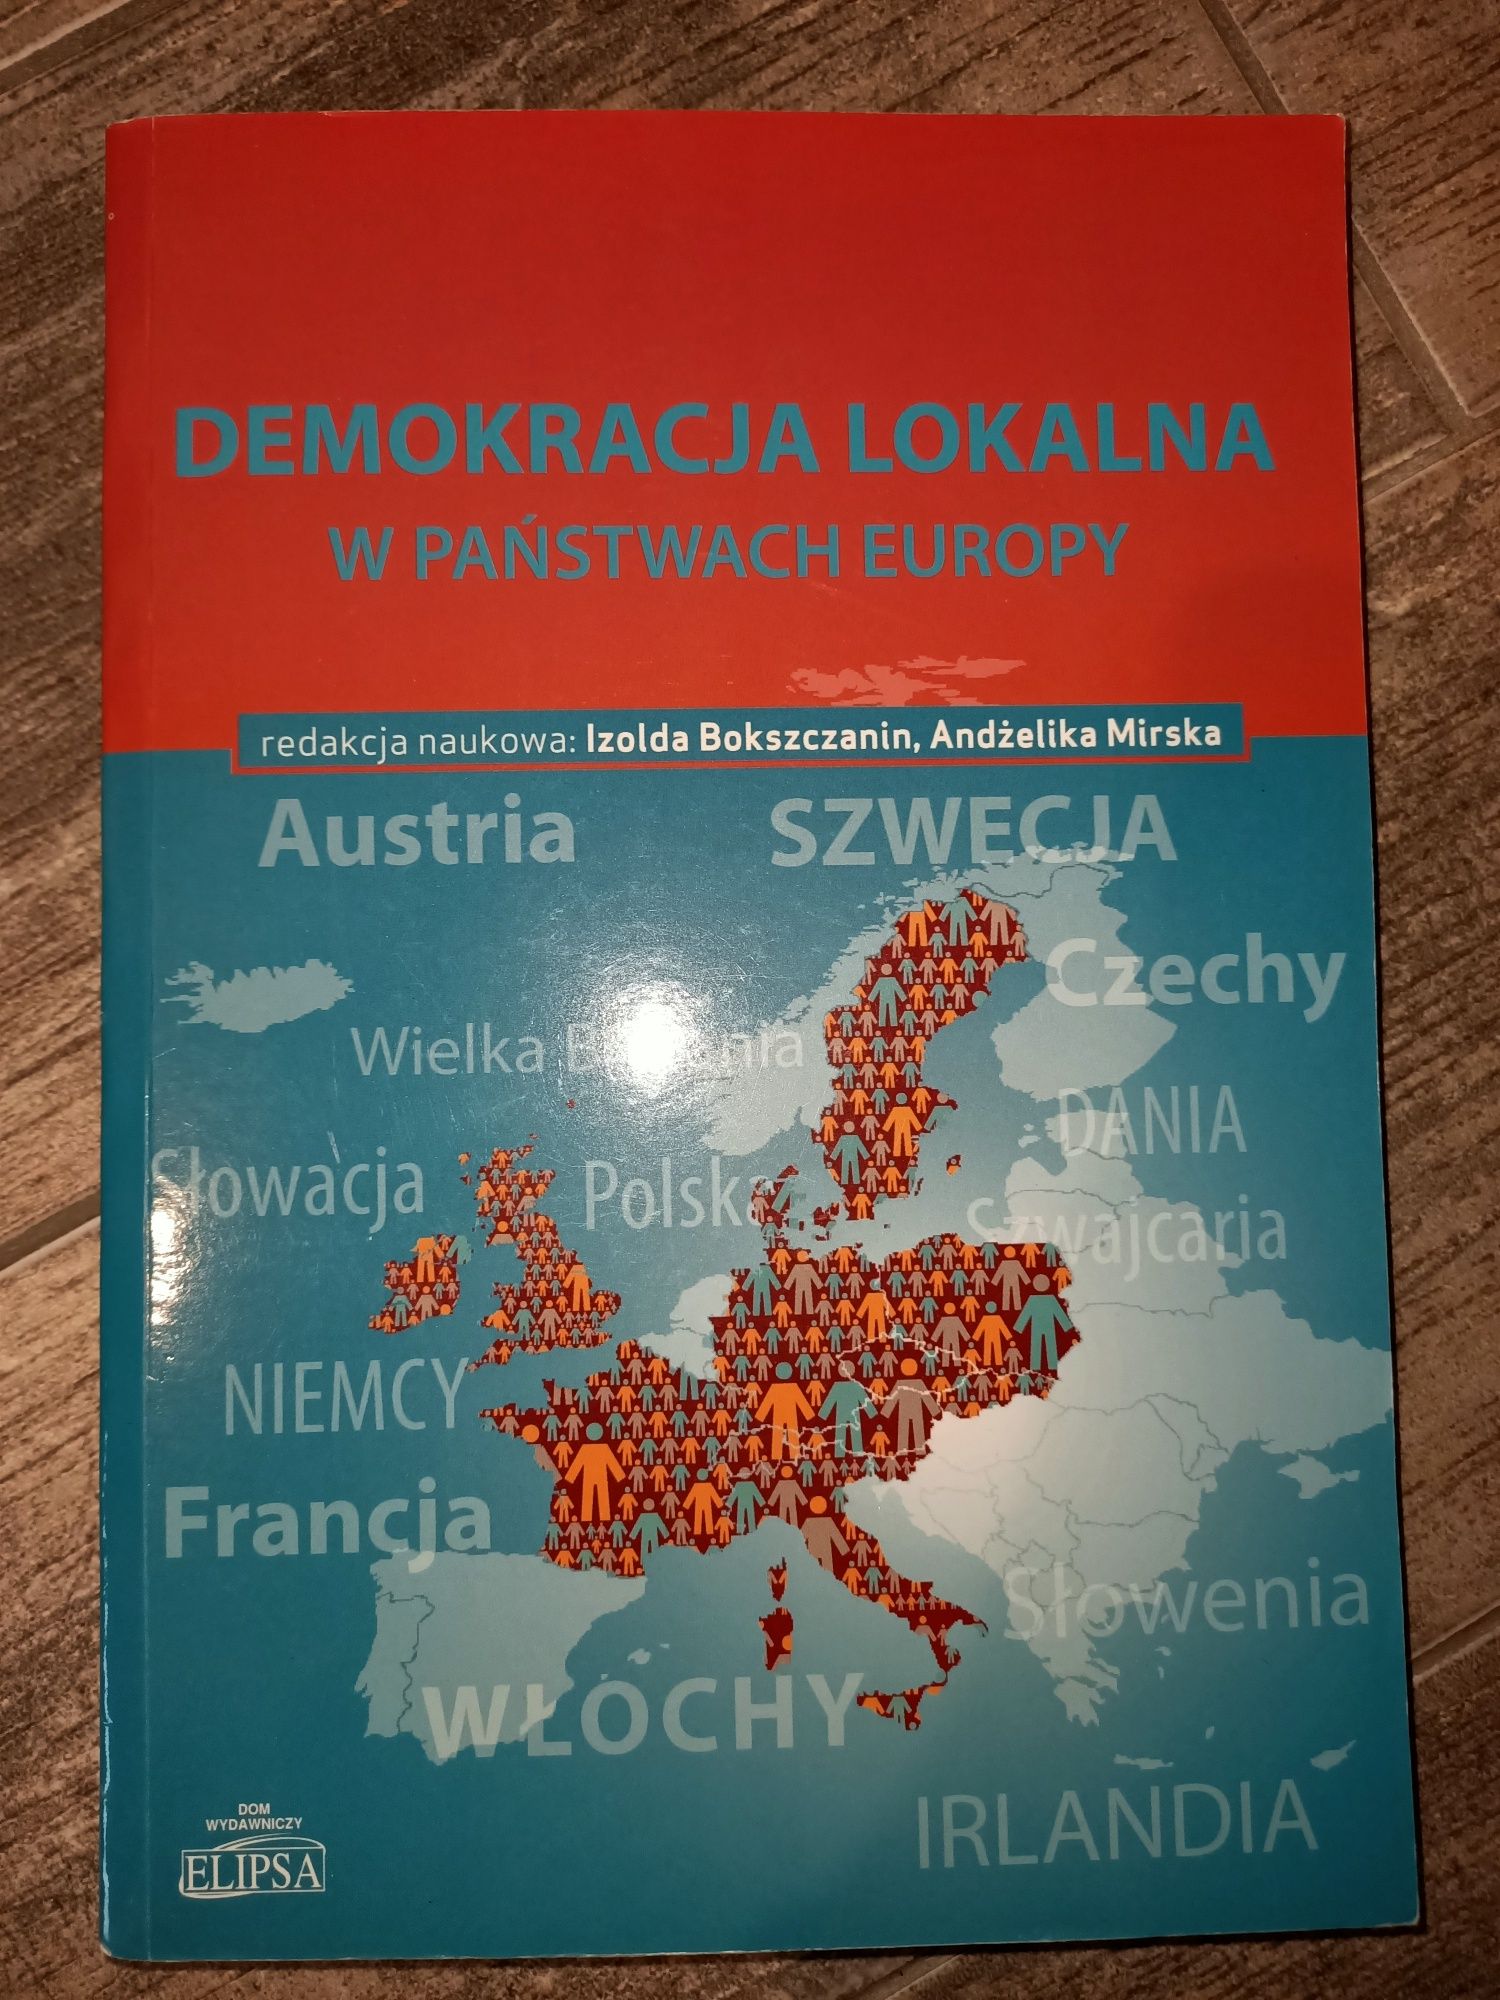 Demokracja lokalna w państwach Europy red. nauk. Bokszczanin, Mirska